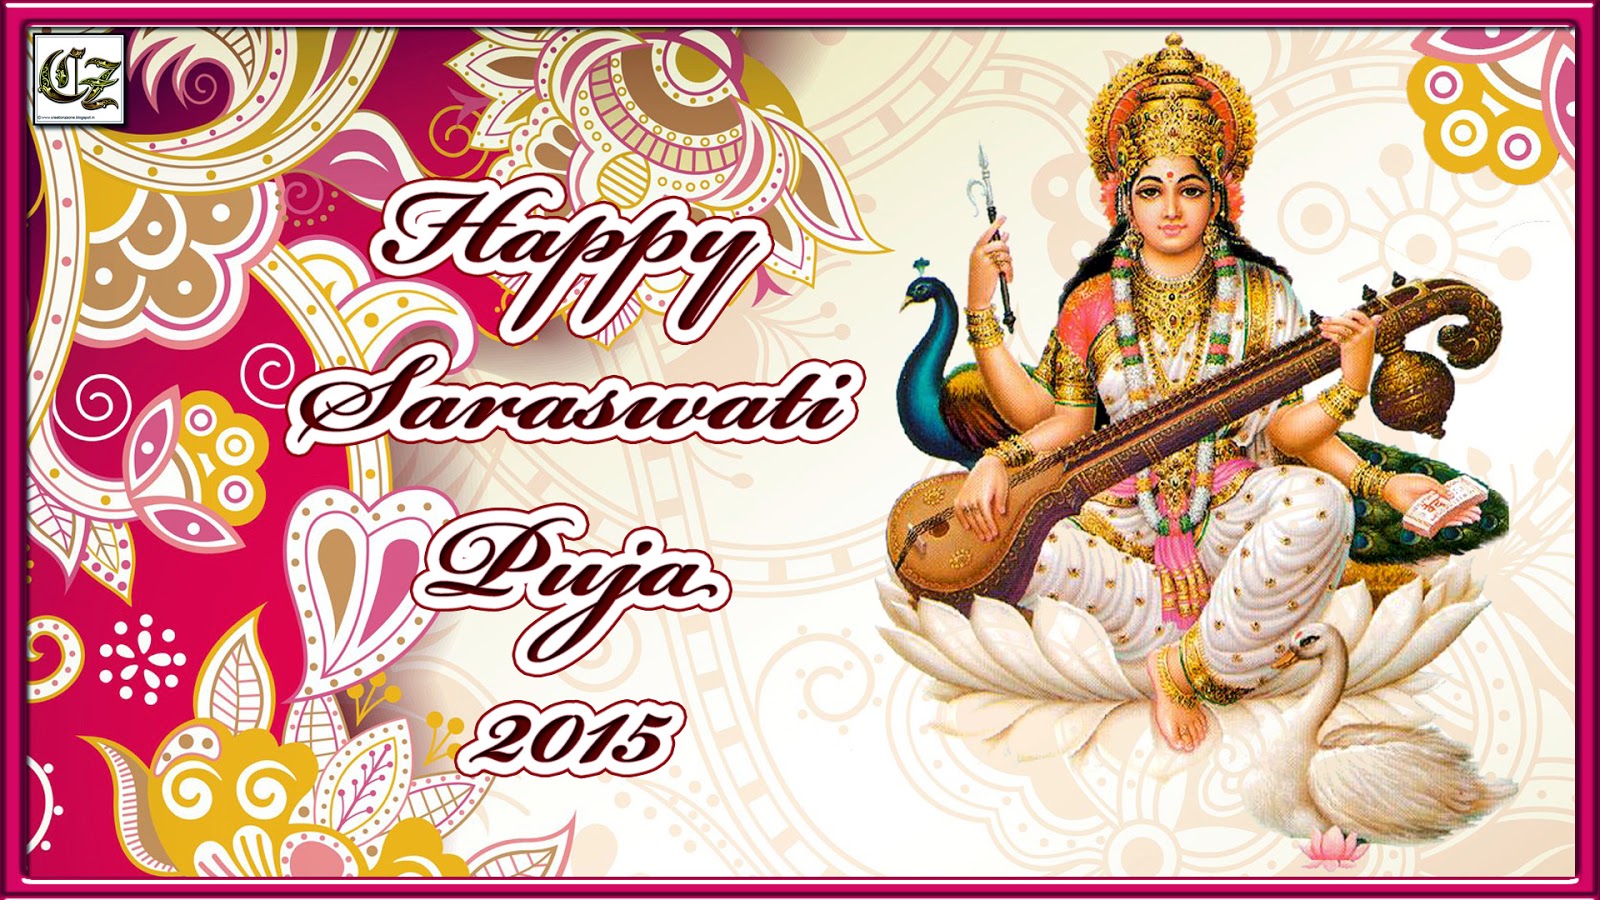 saraswati puja wallpaper,musikinstrument,indische musikinstrumente,bansuri,gezupfte saiteninstrumente